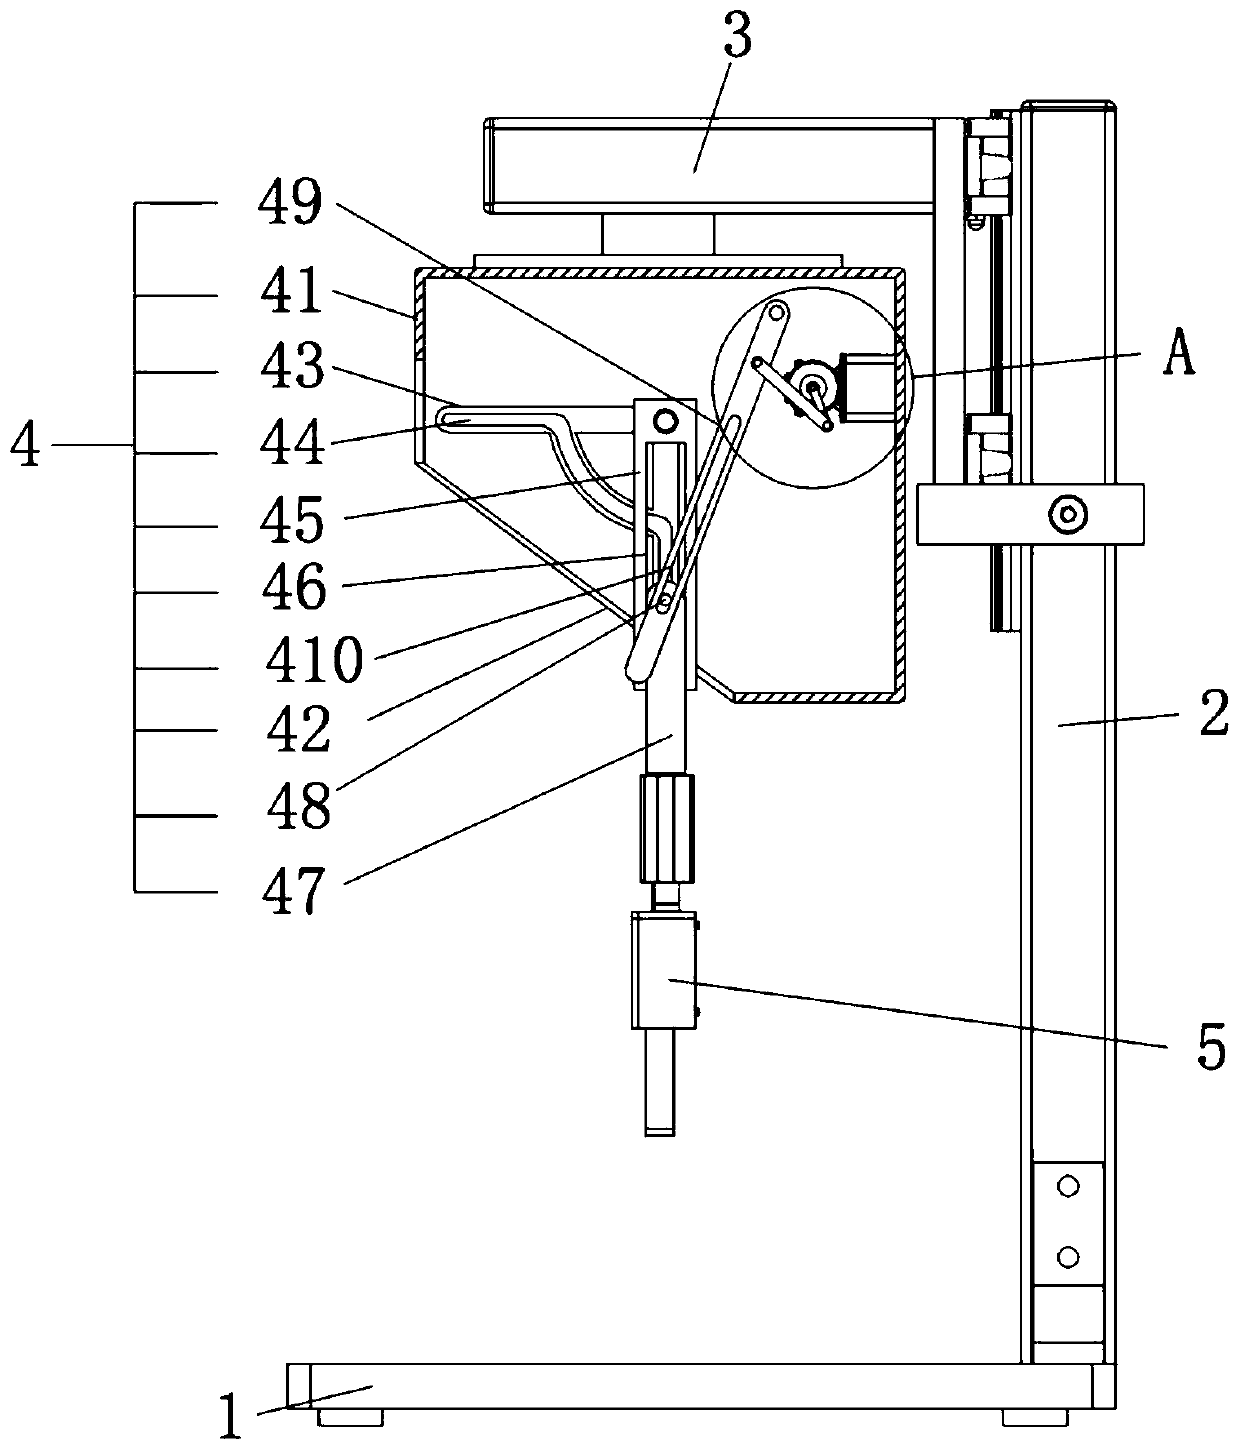 Auxiliary feeding device of forging hydraulic press